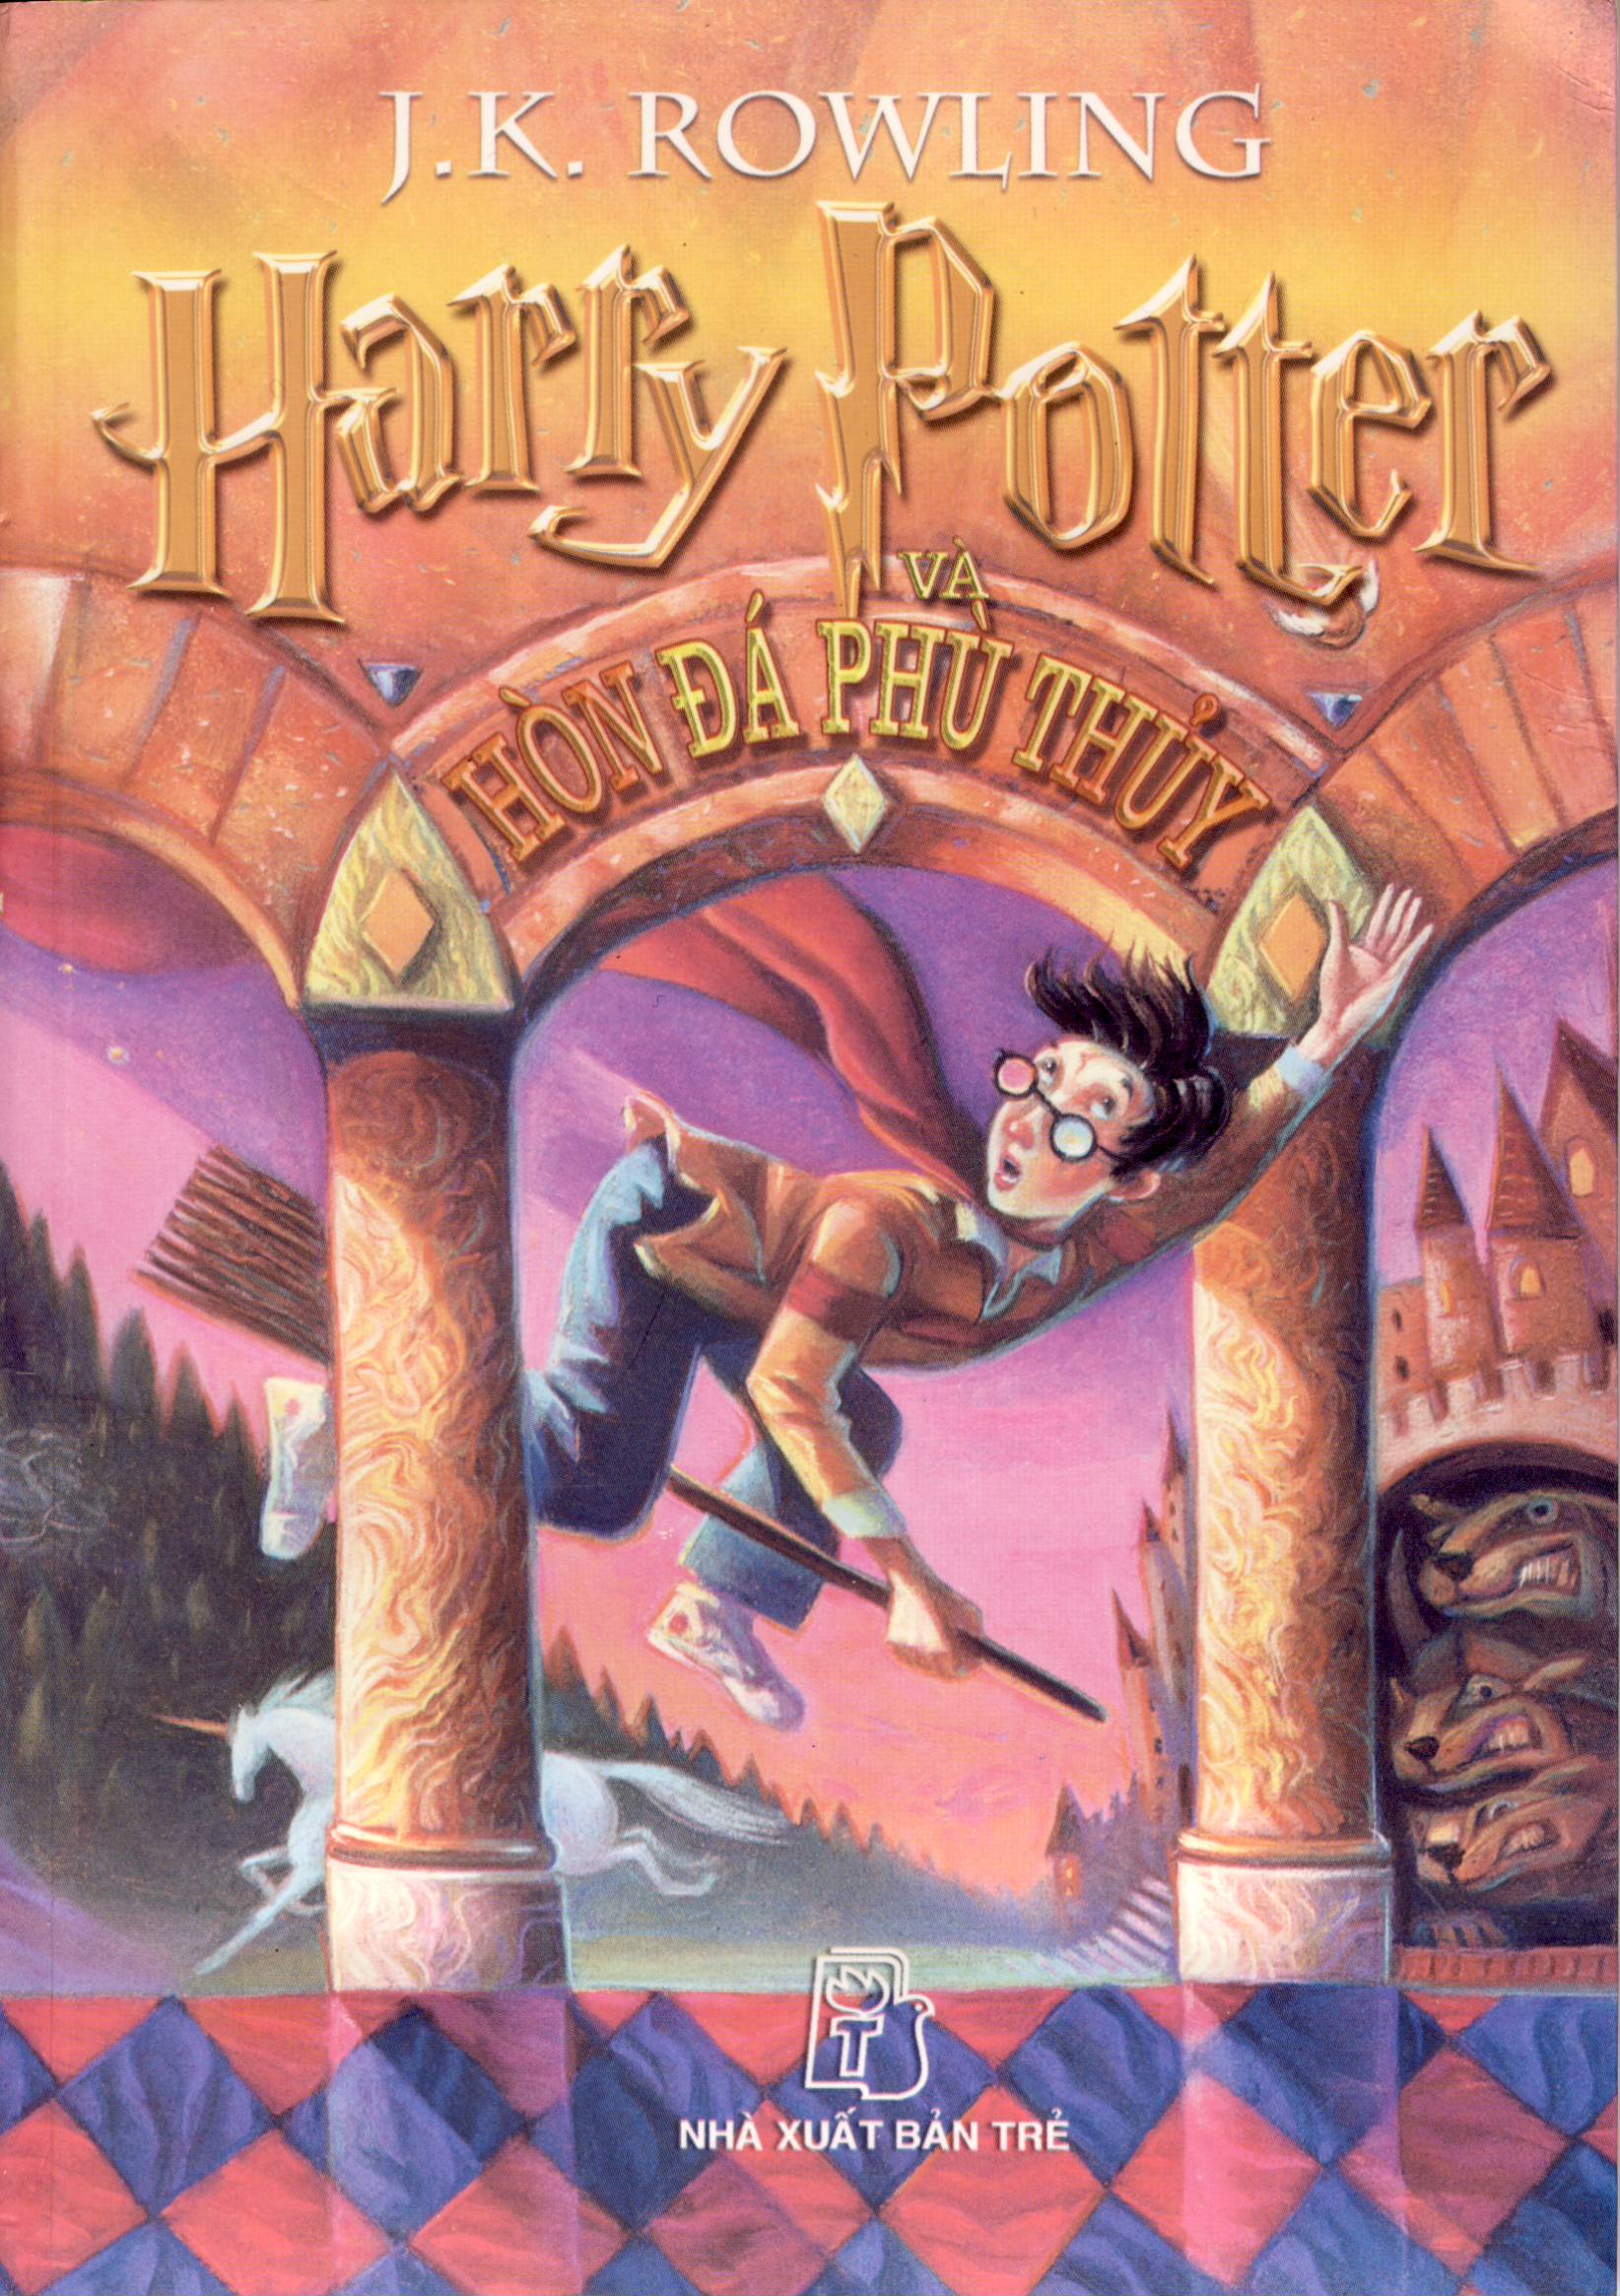 Chào mừng bạn đến với thế giới ma thuật của Harry Potter! Xem hình ảnh liên quan đến Harry Potter để khám phá thế giới phù thủy đầy màu sắc và hấp dẫn này nhé!